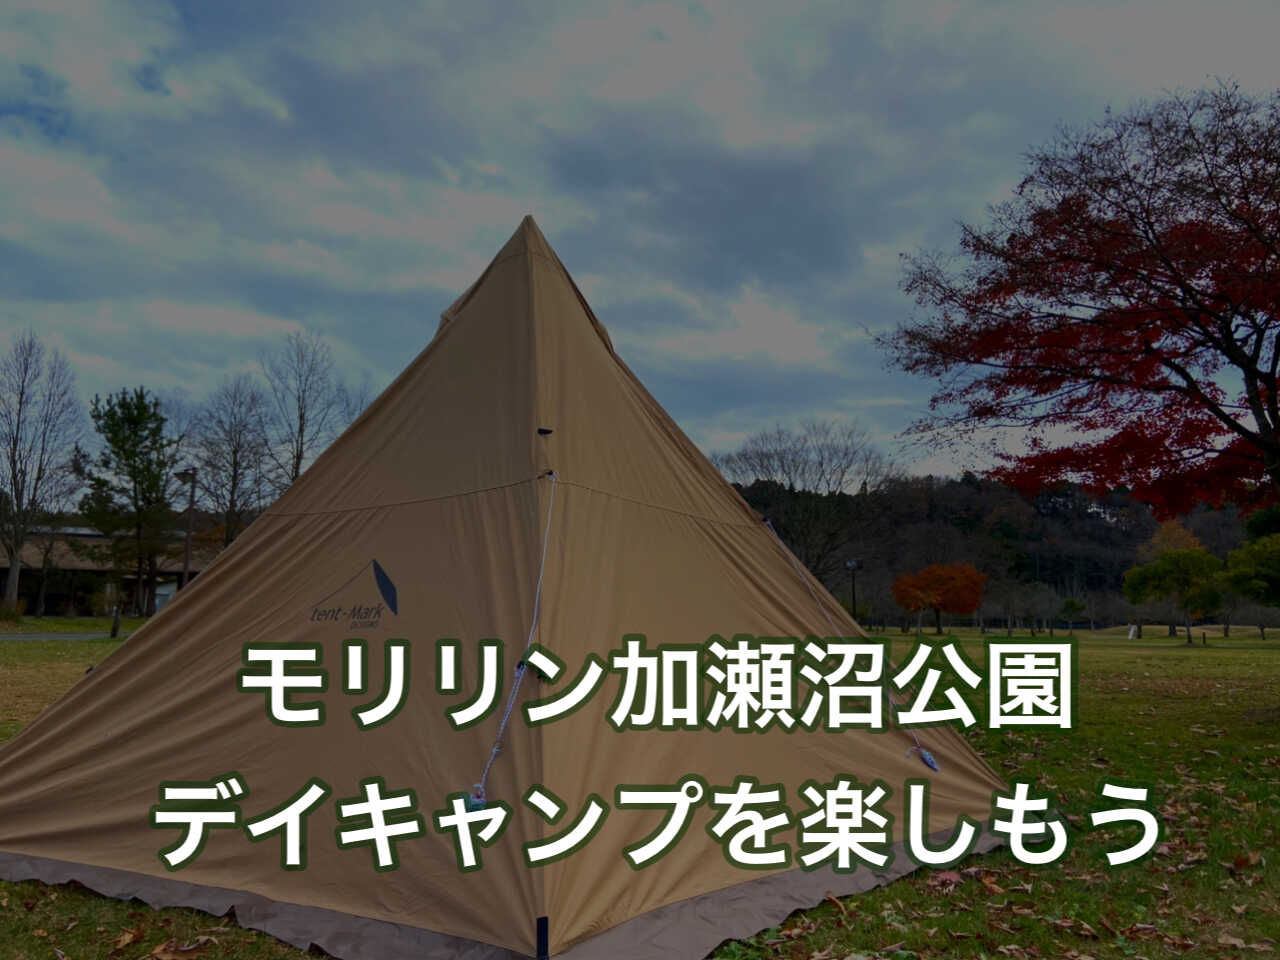 加瀬沼公園 デイキャンプを楽しもう テント利用も芋煮会もbbqも無料だぞ Tateshu Com